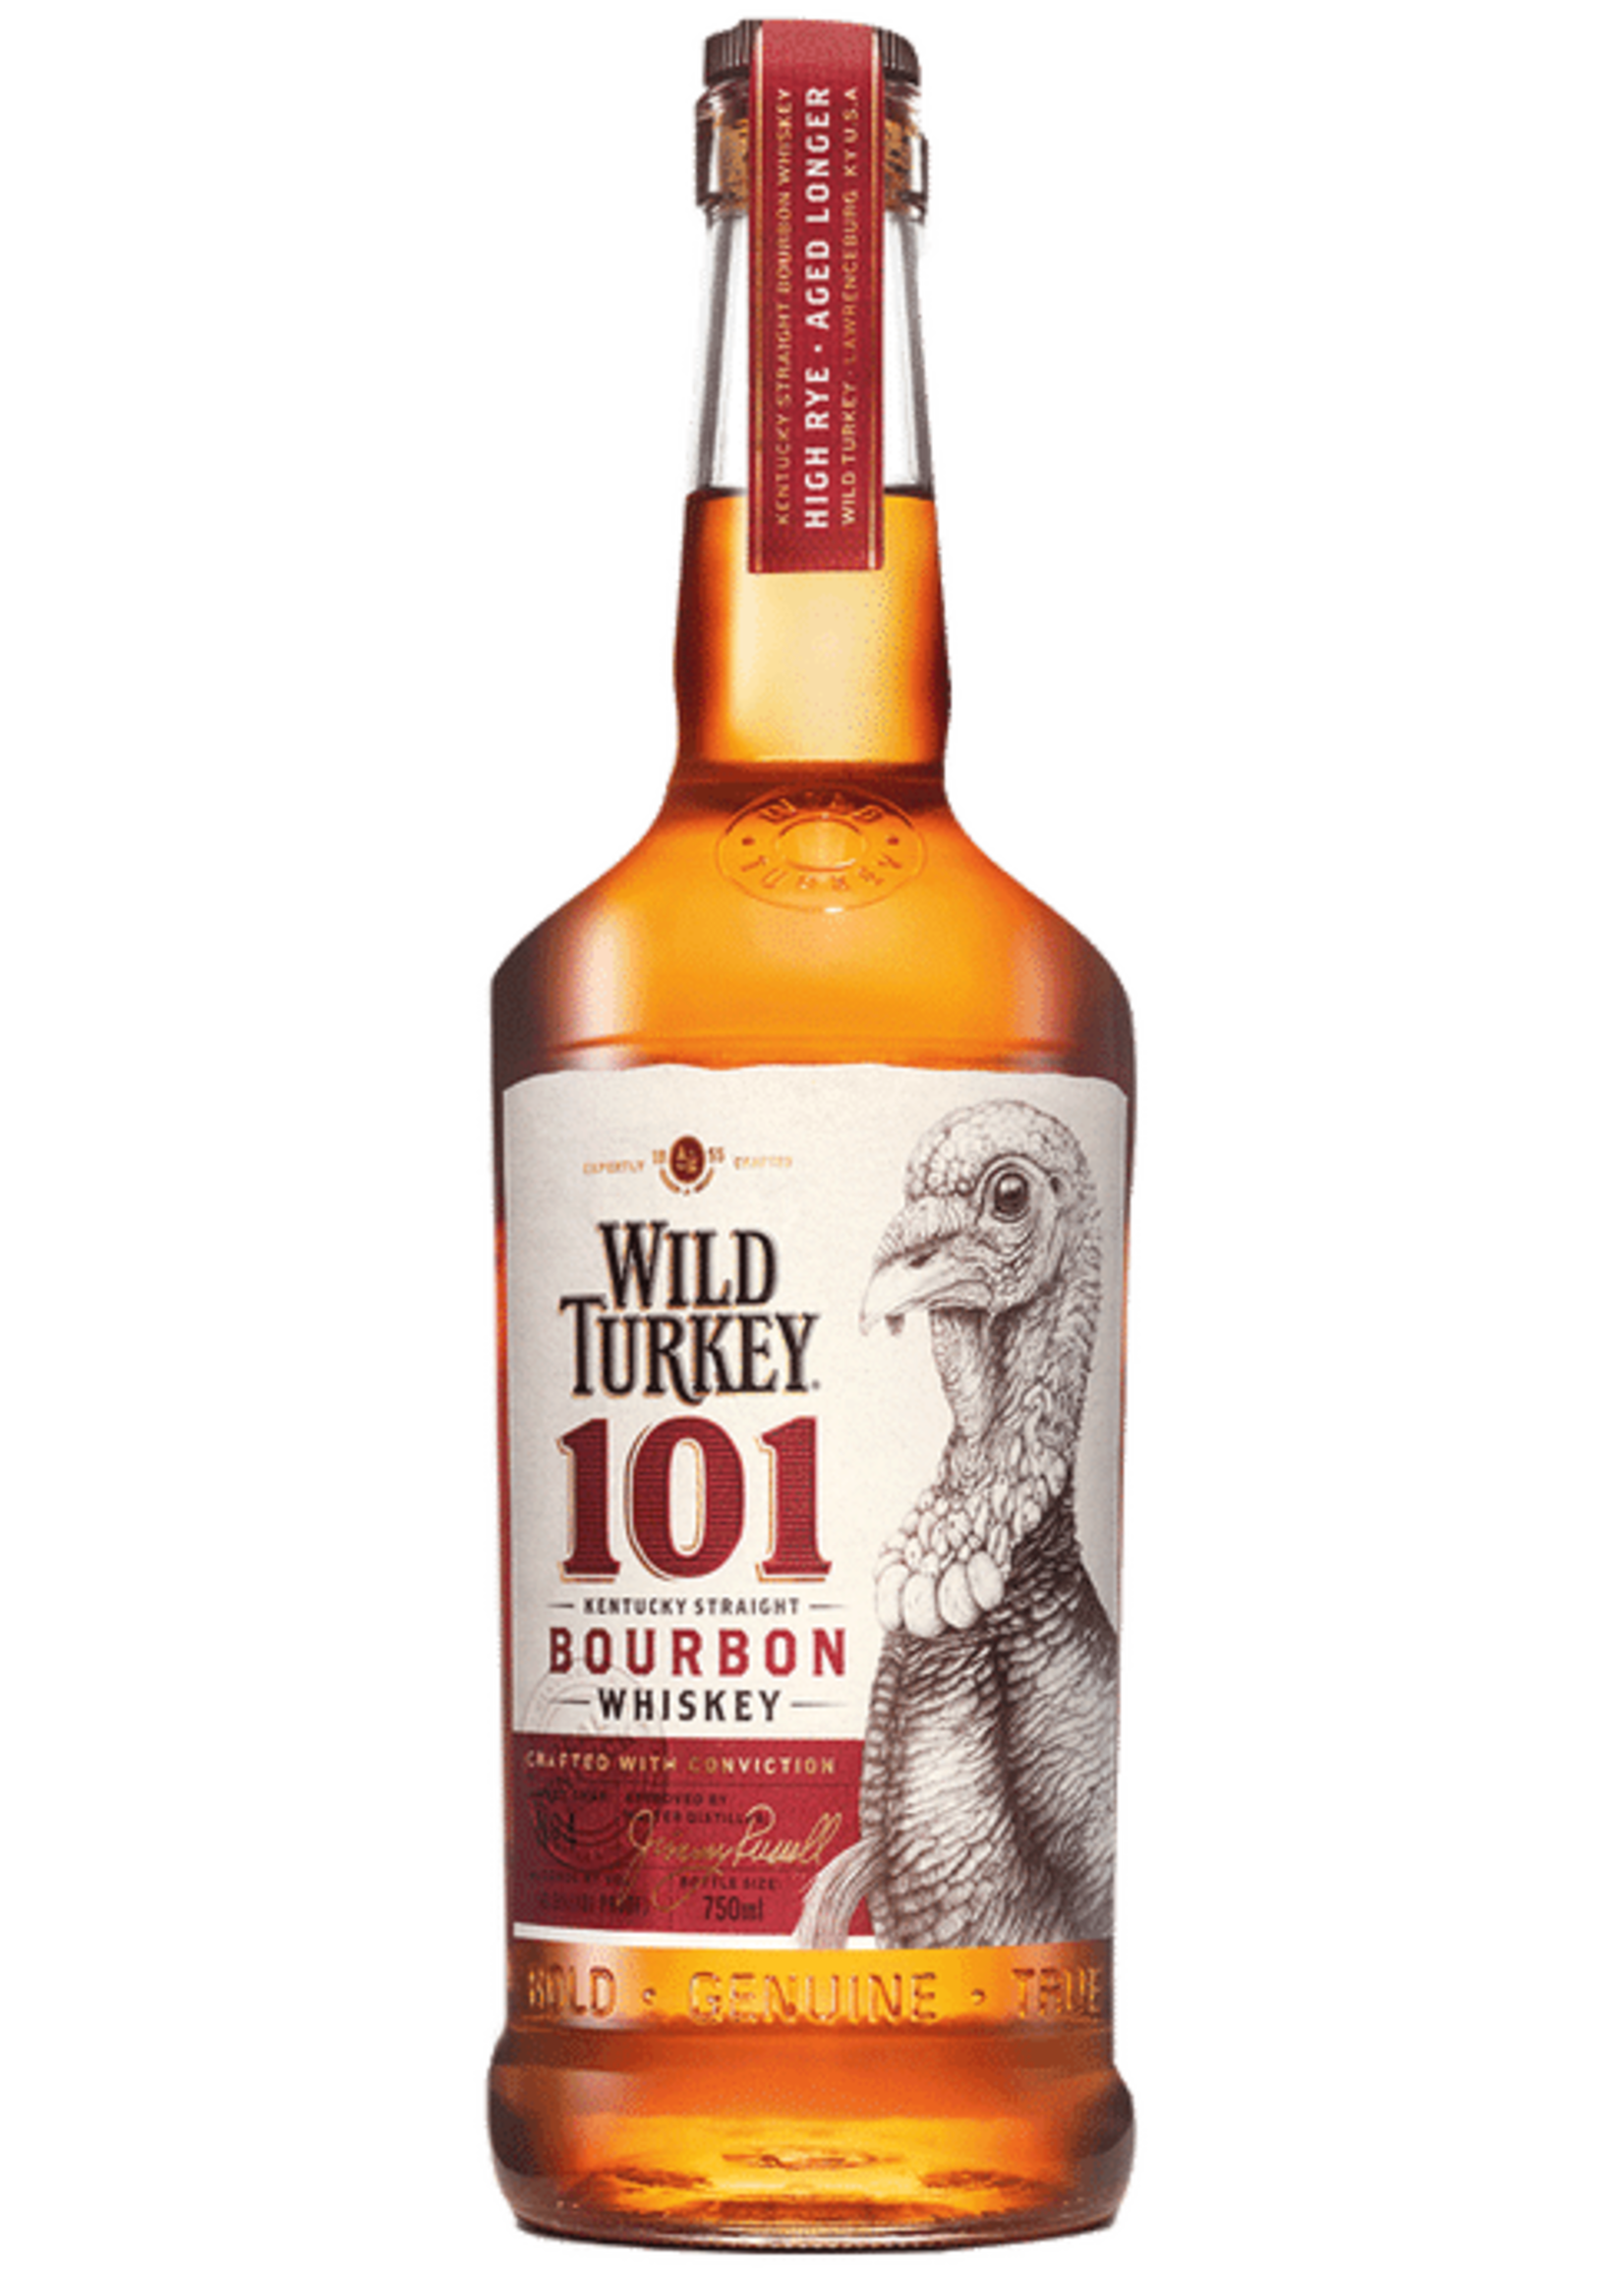 Wild Turkey Wild Turkey / 101 Bourbon